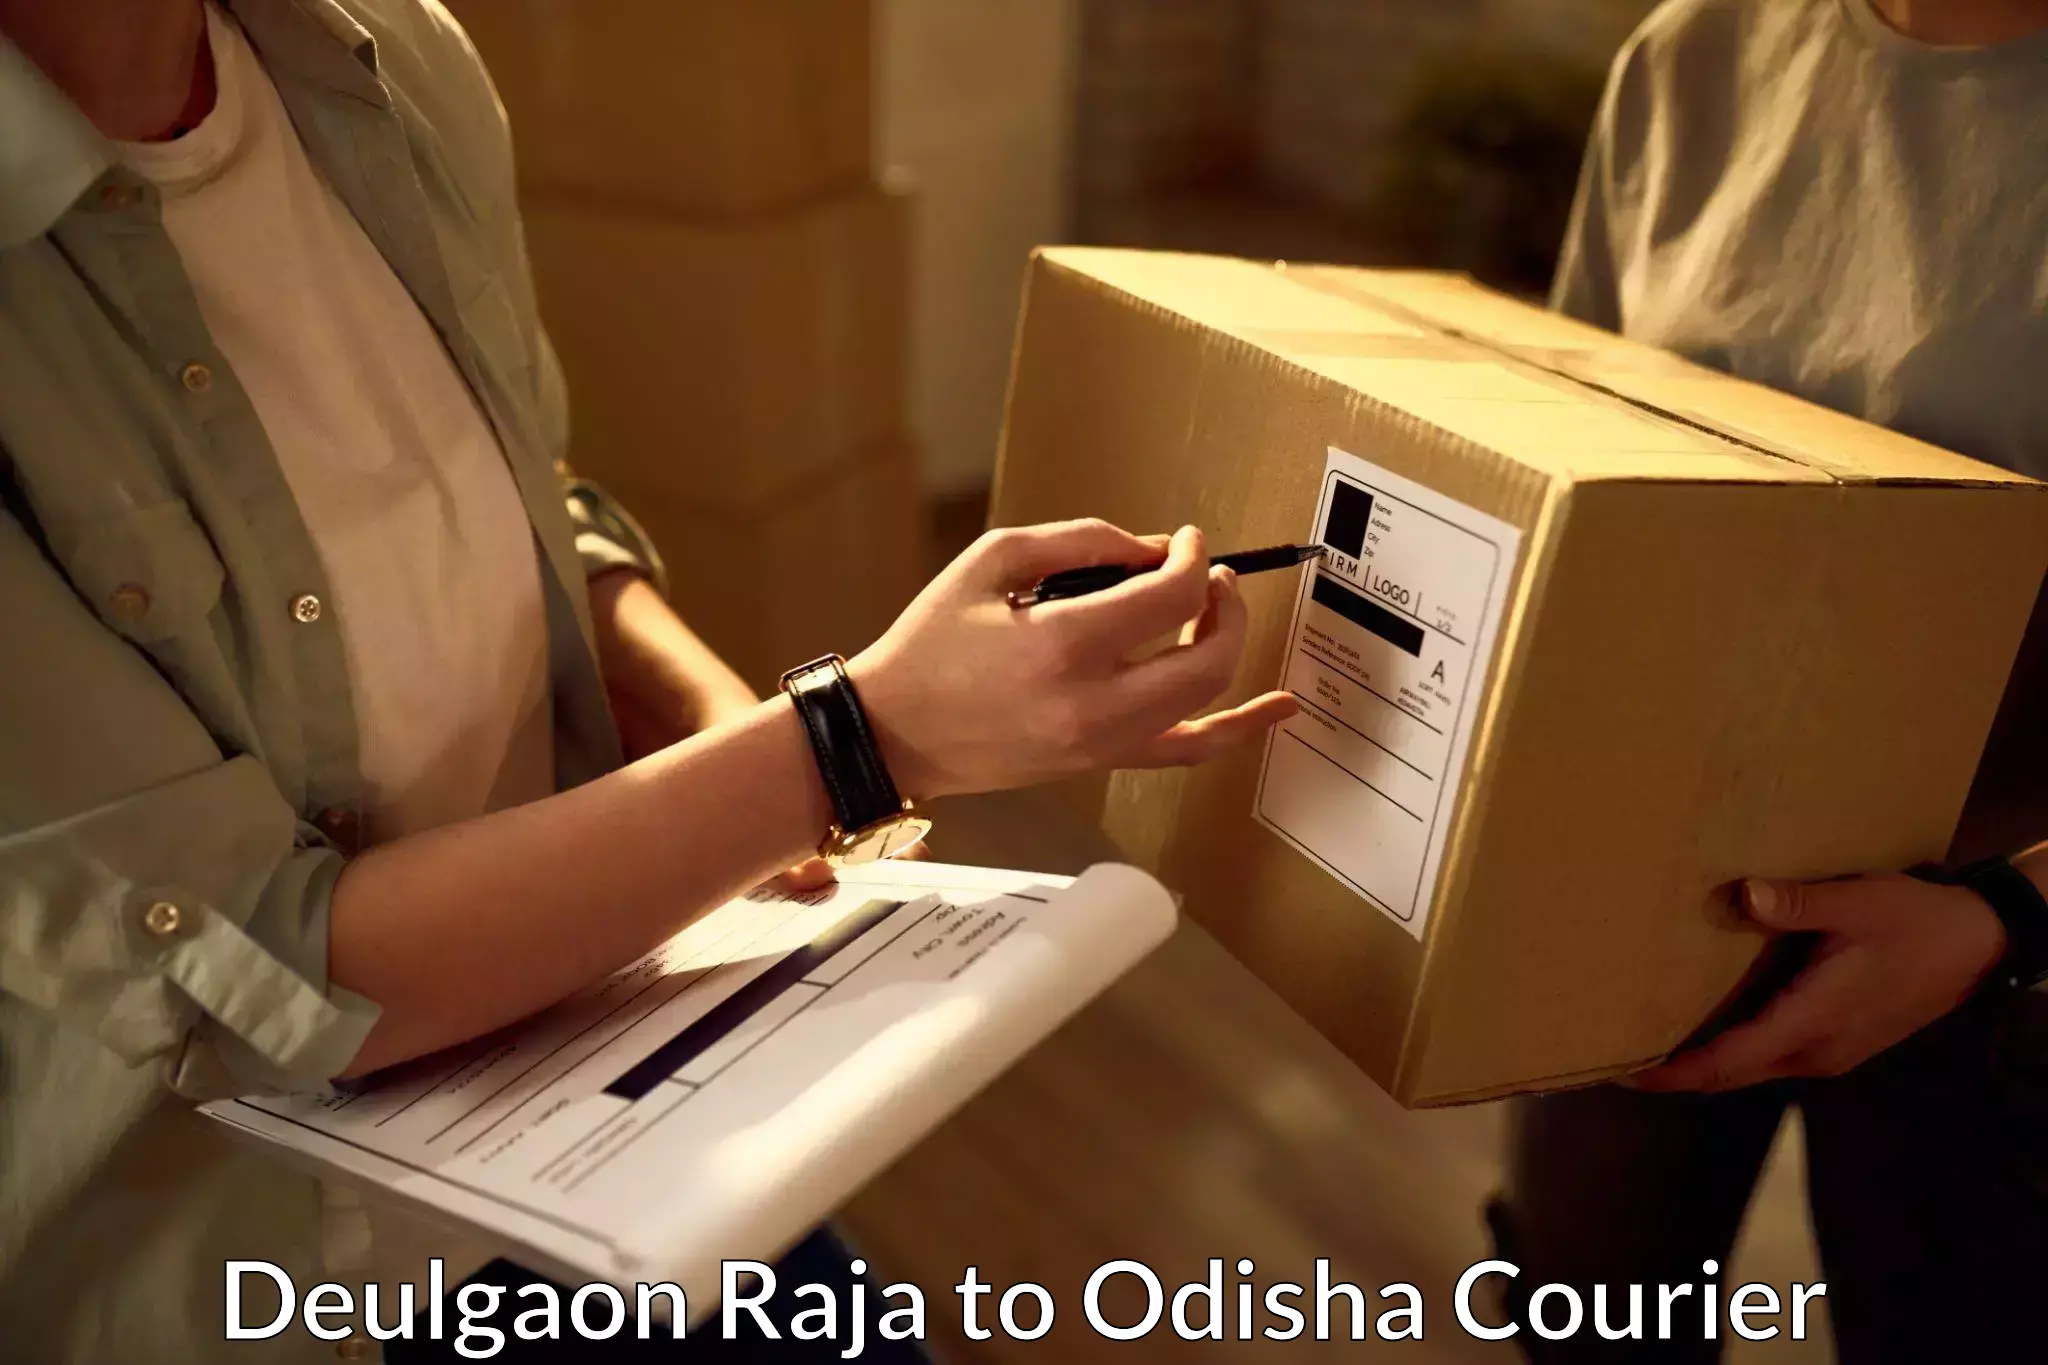 Express mail service Deulgaon Raja to Bangriposi